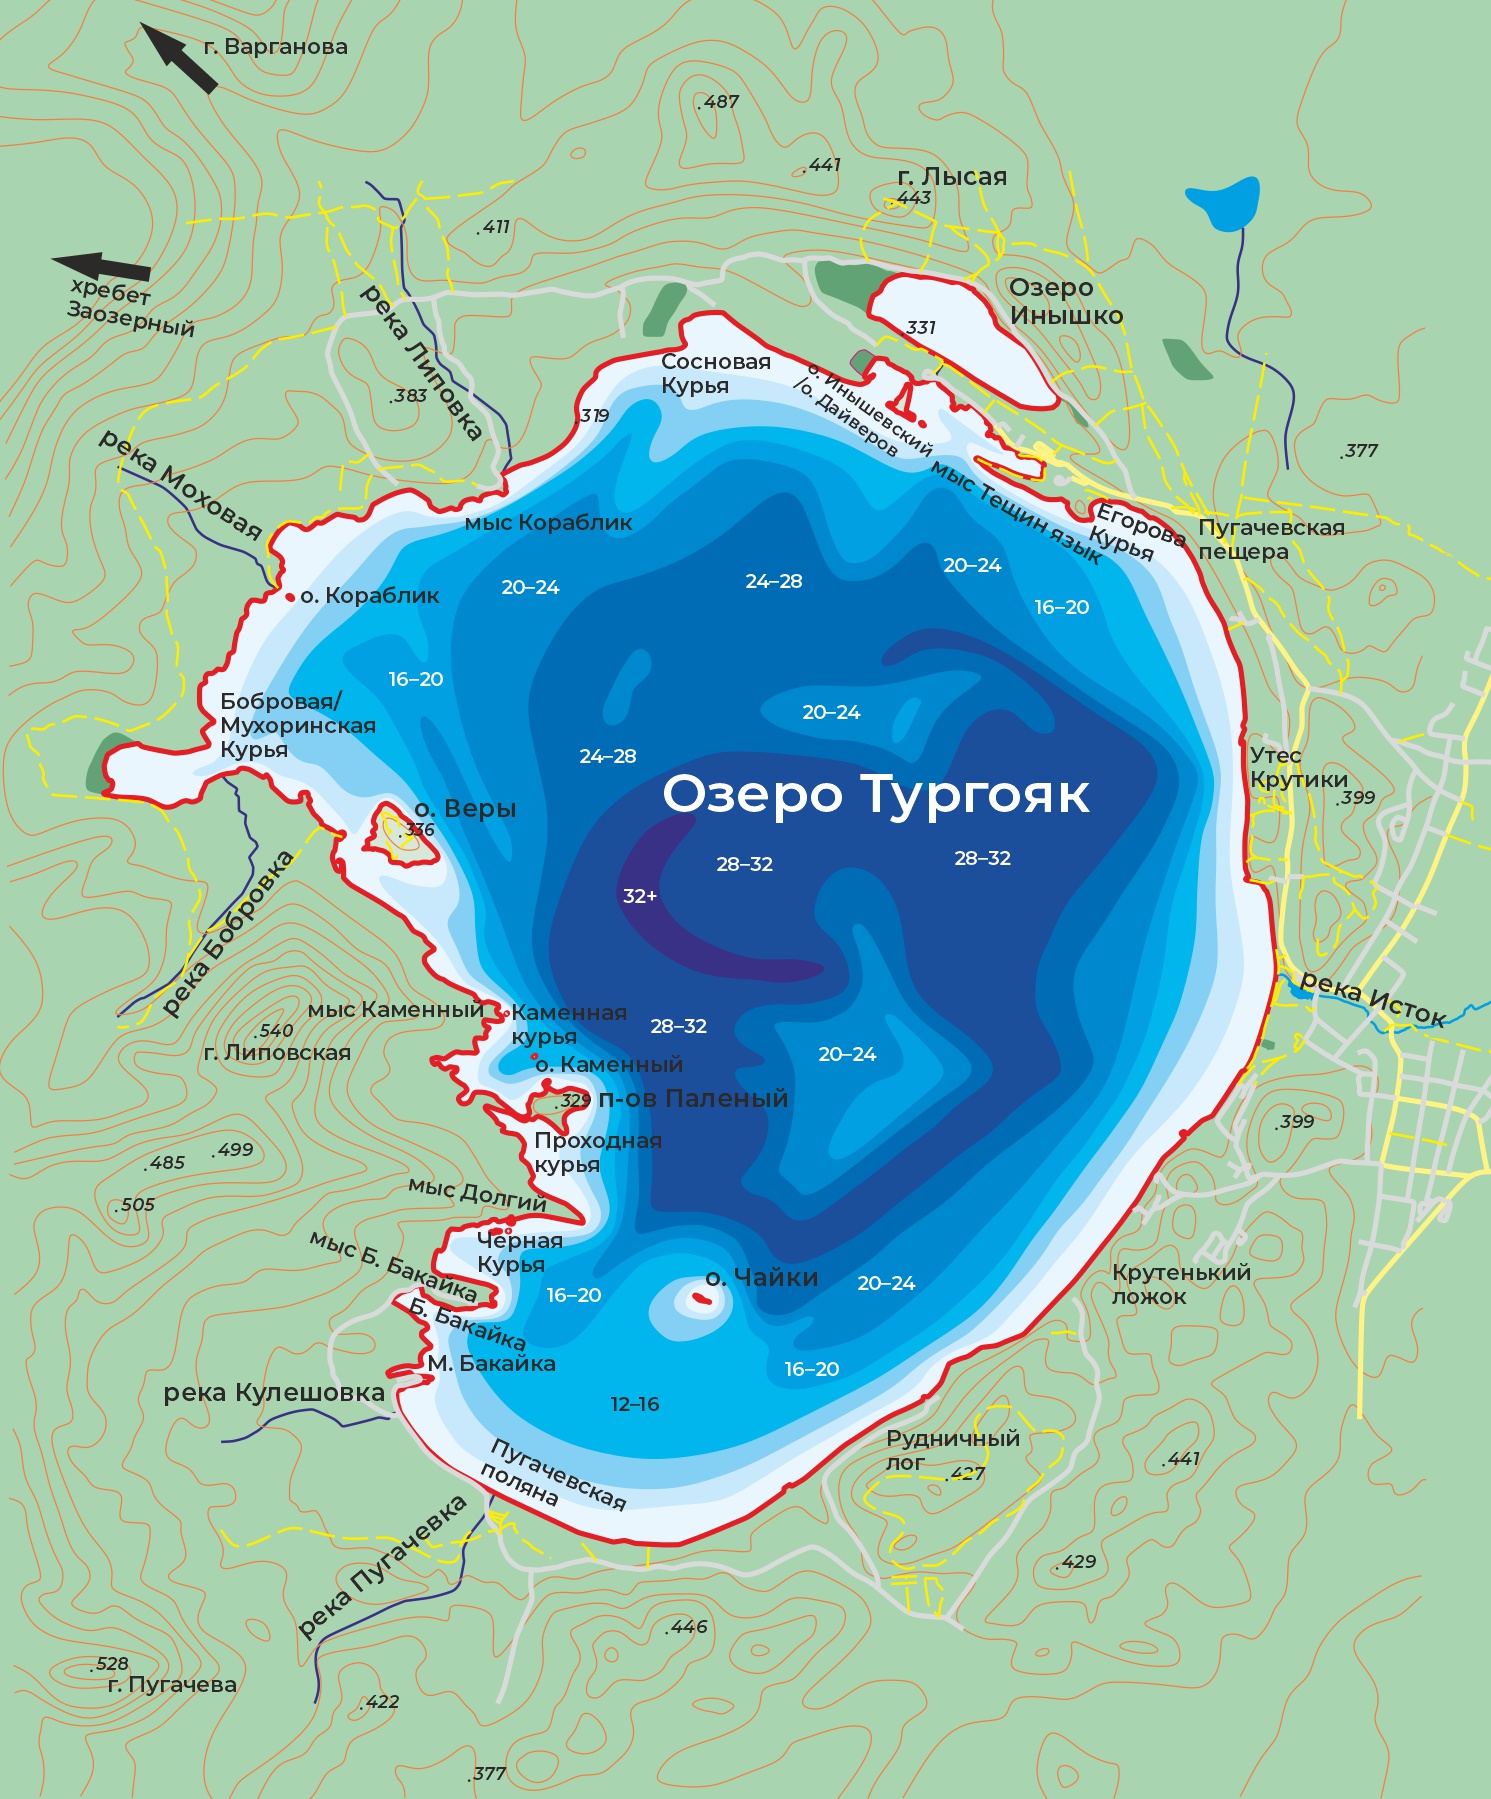 Подробная карта озера Тургояк